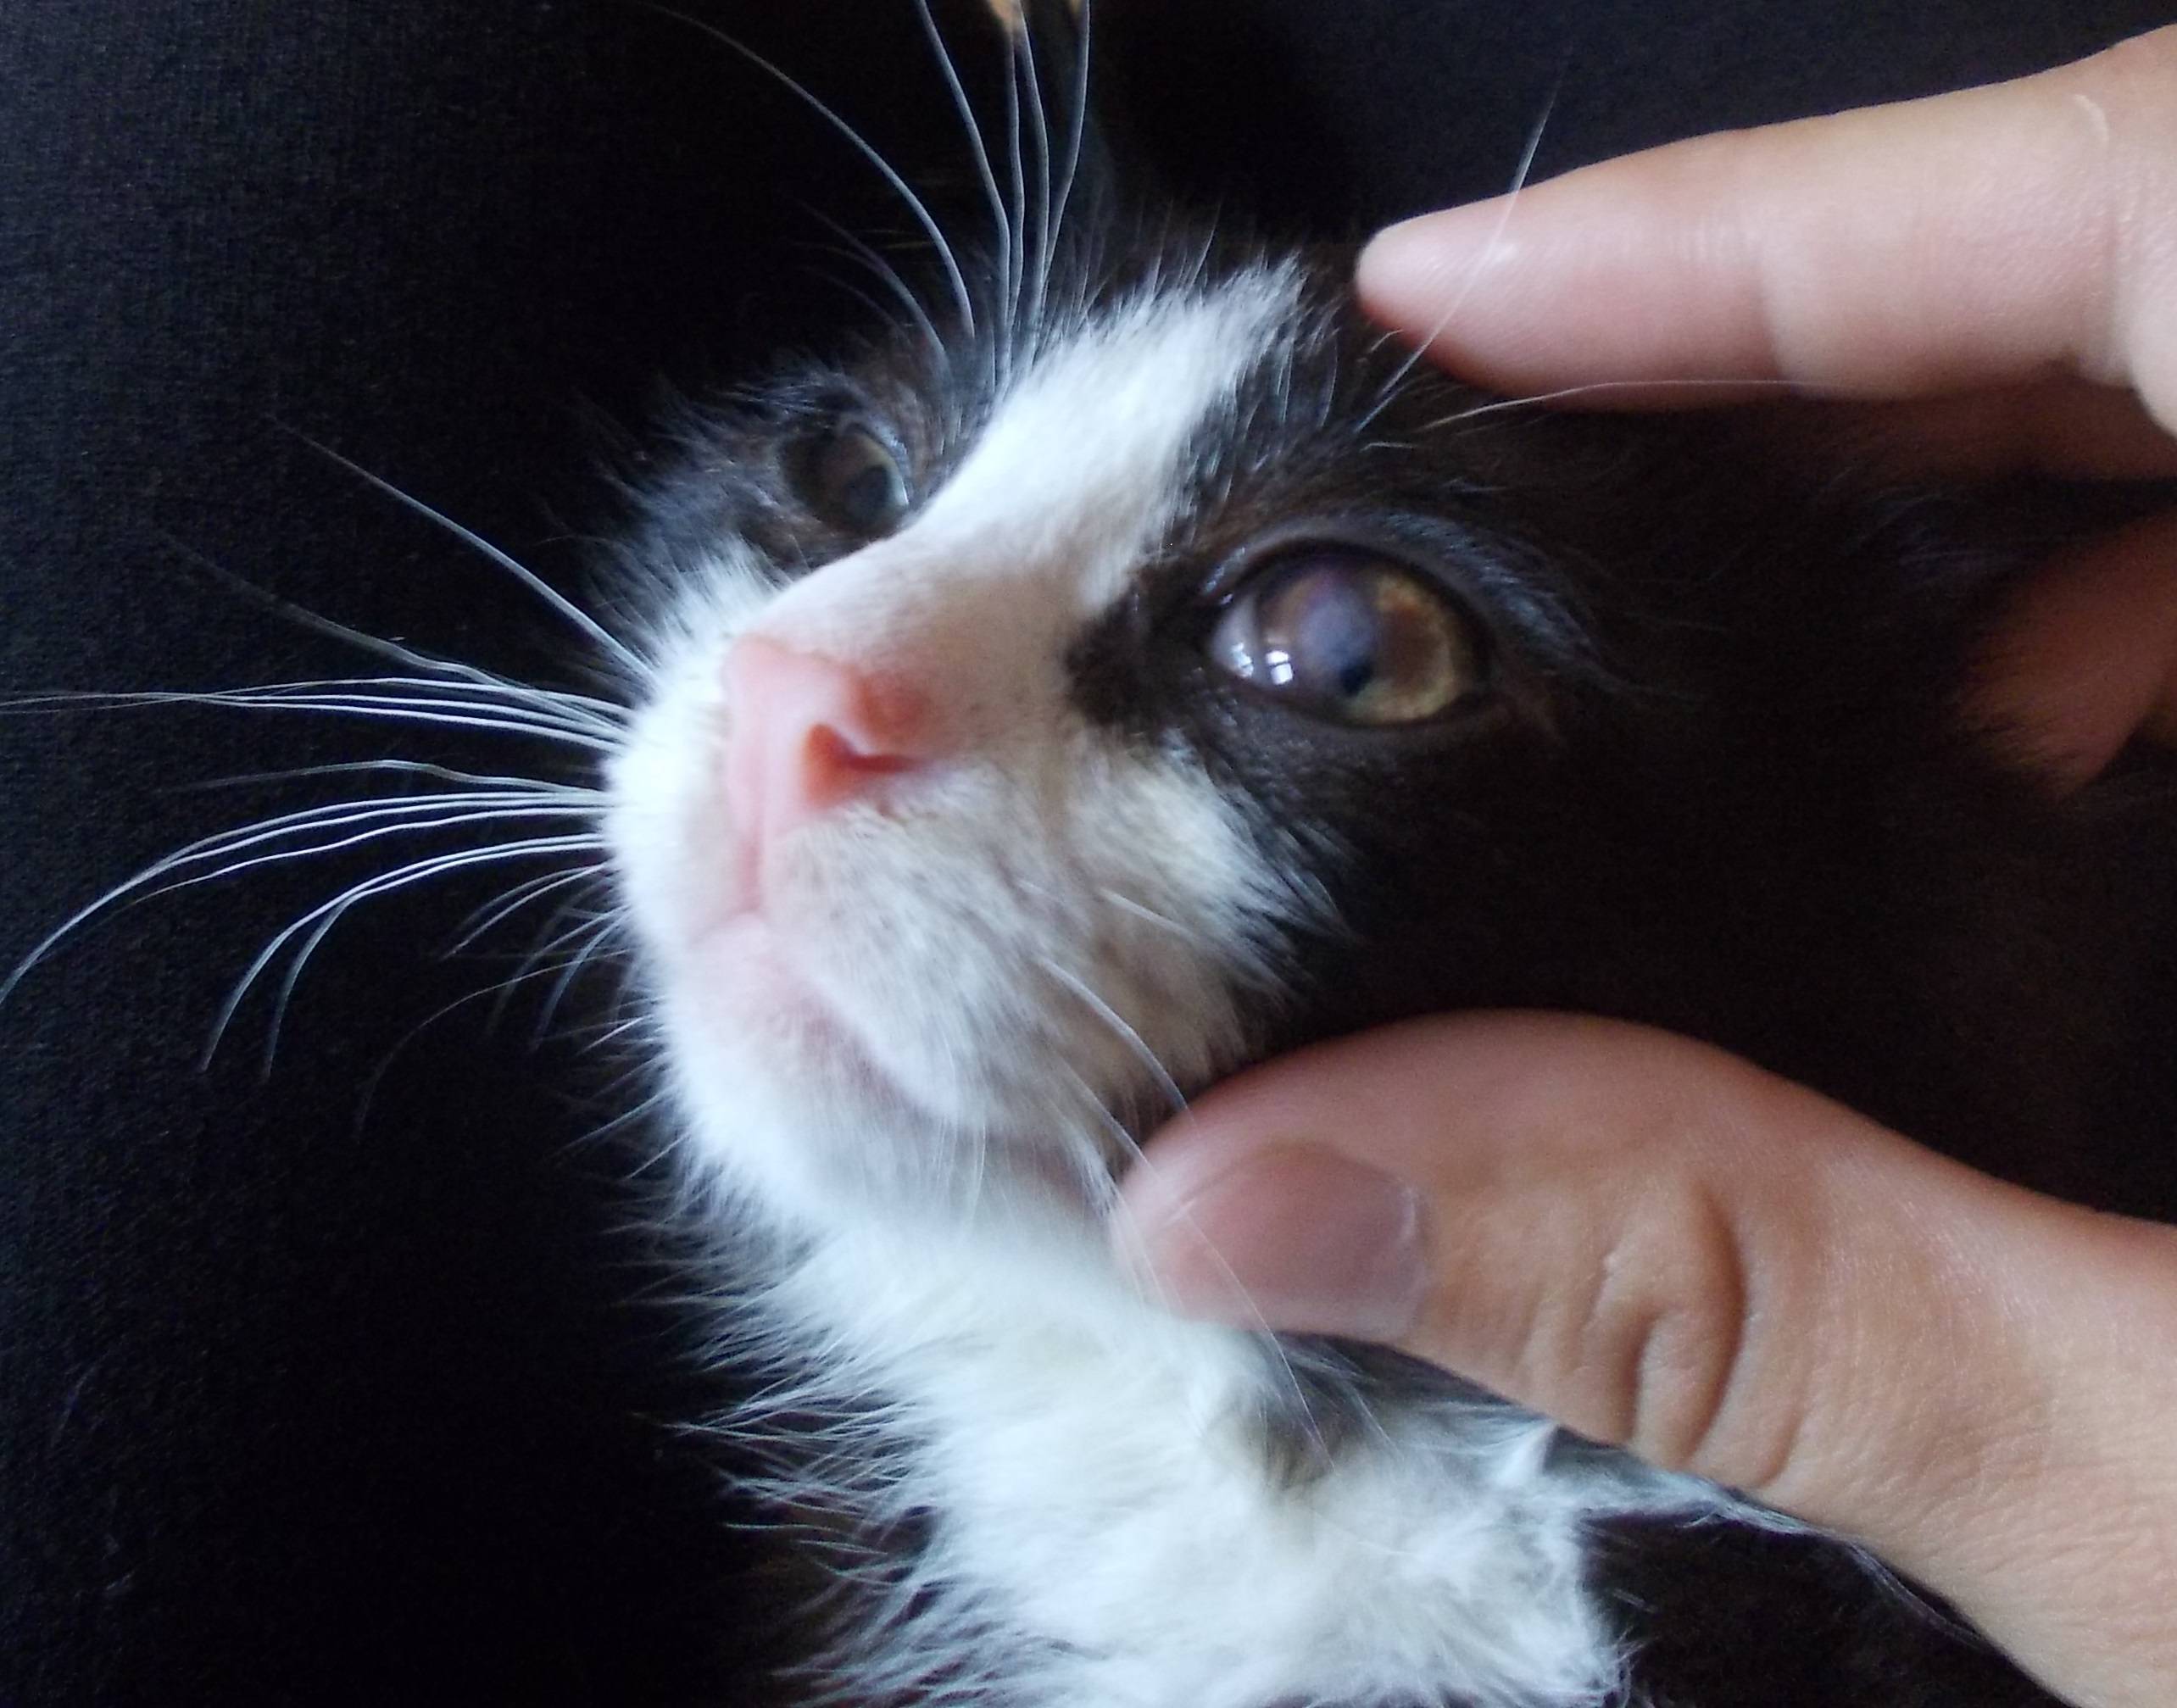 У кошки третье веко: причины, лечение, фото, что делать, если глаза наполовину закрыты плёнкой